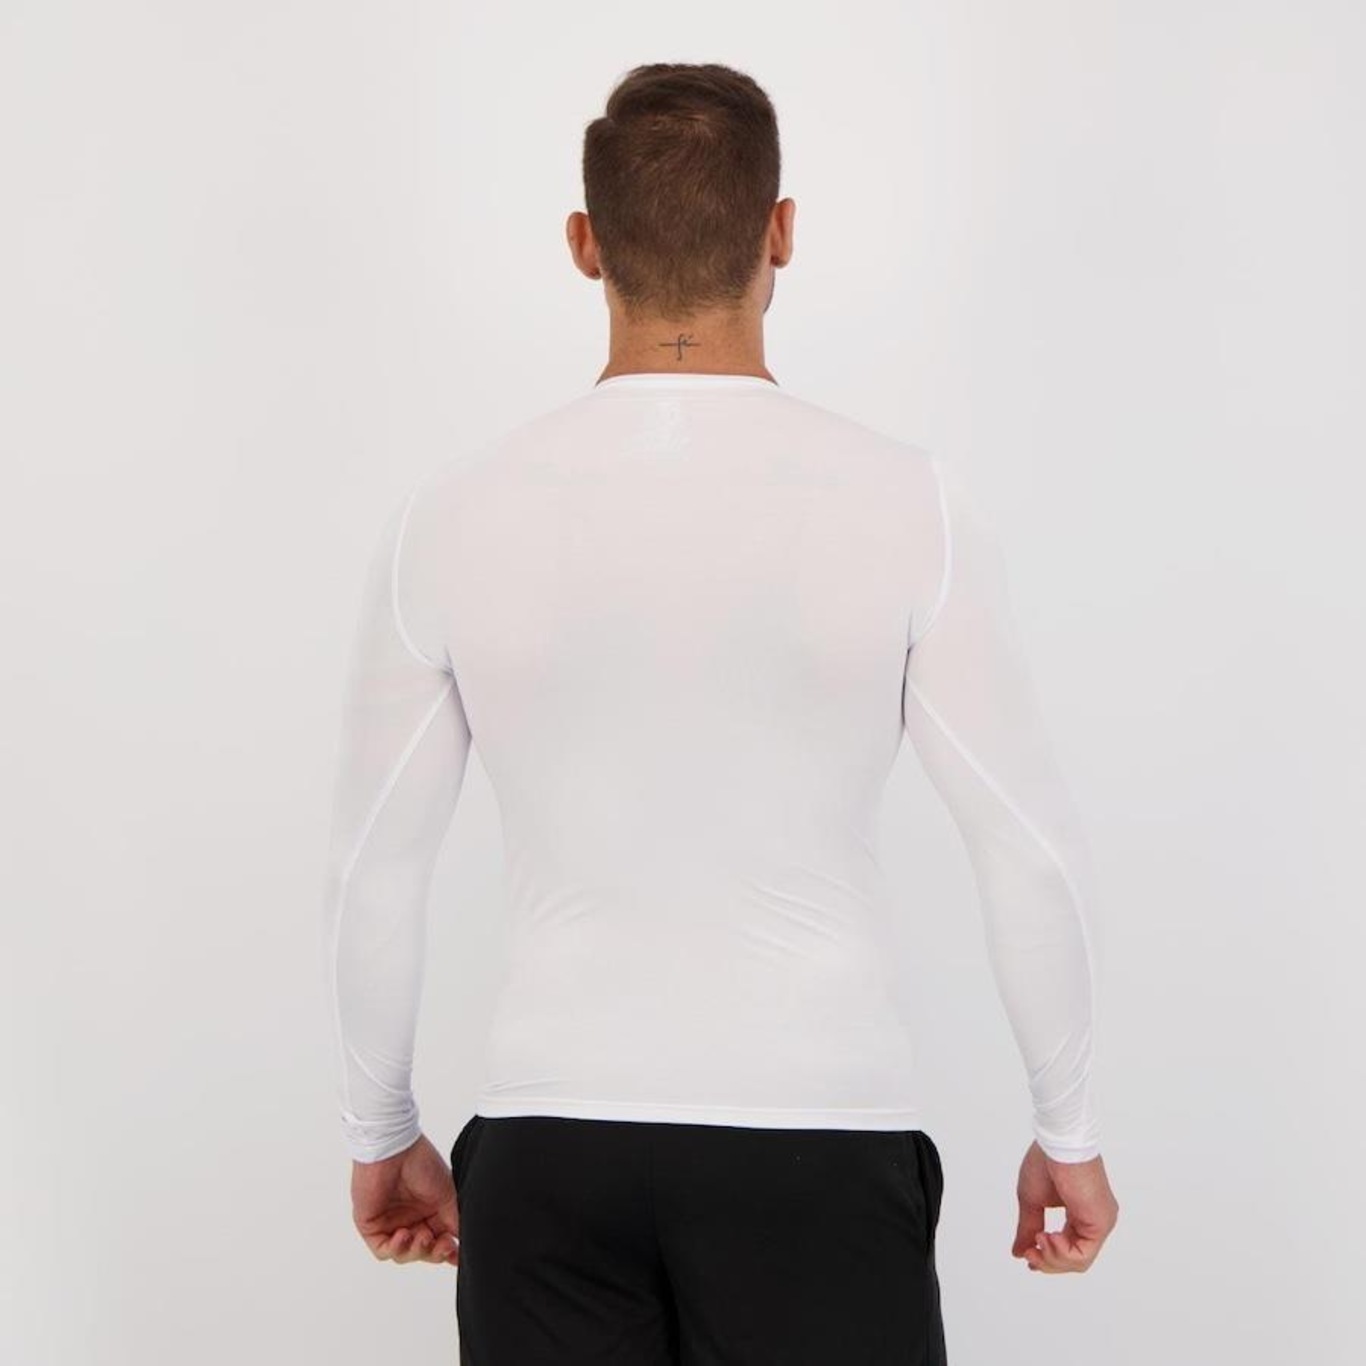 Camisa de Compressão Manga Longa com Proteção Solar UV Penalty Matís - Masculina - Foto 3